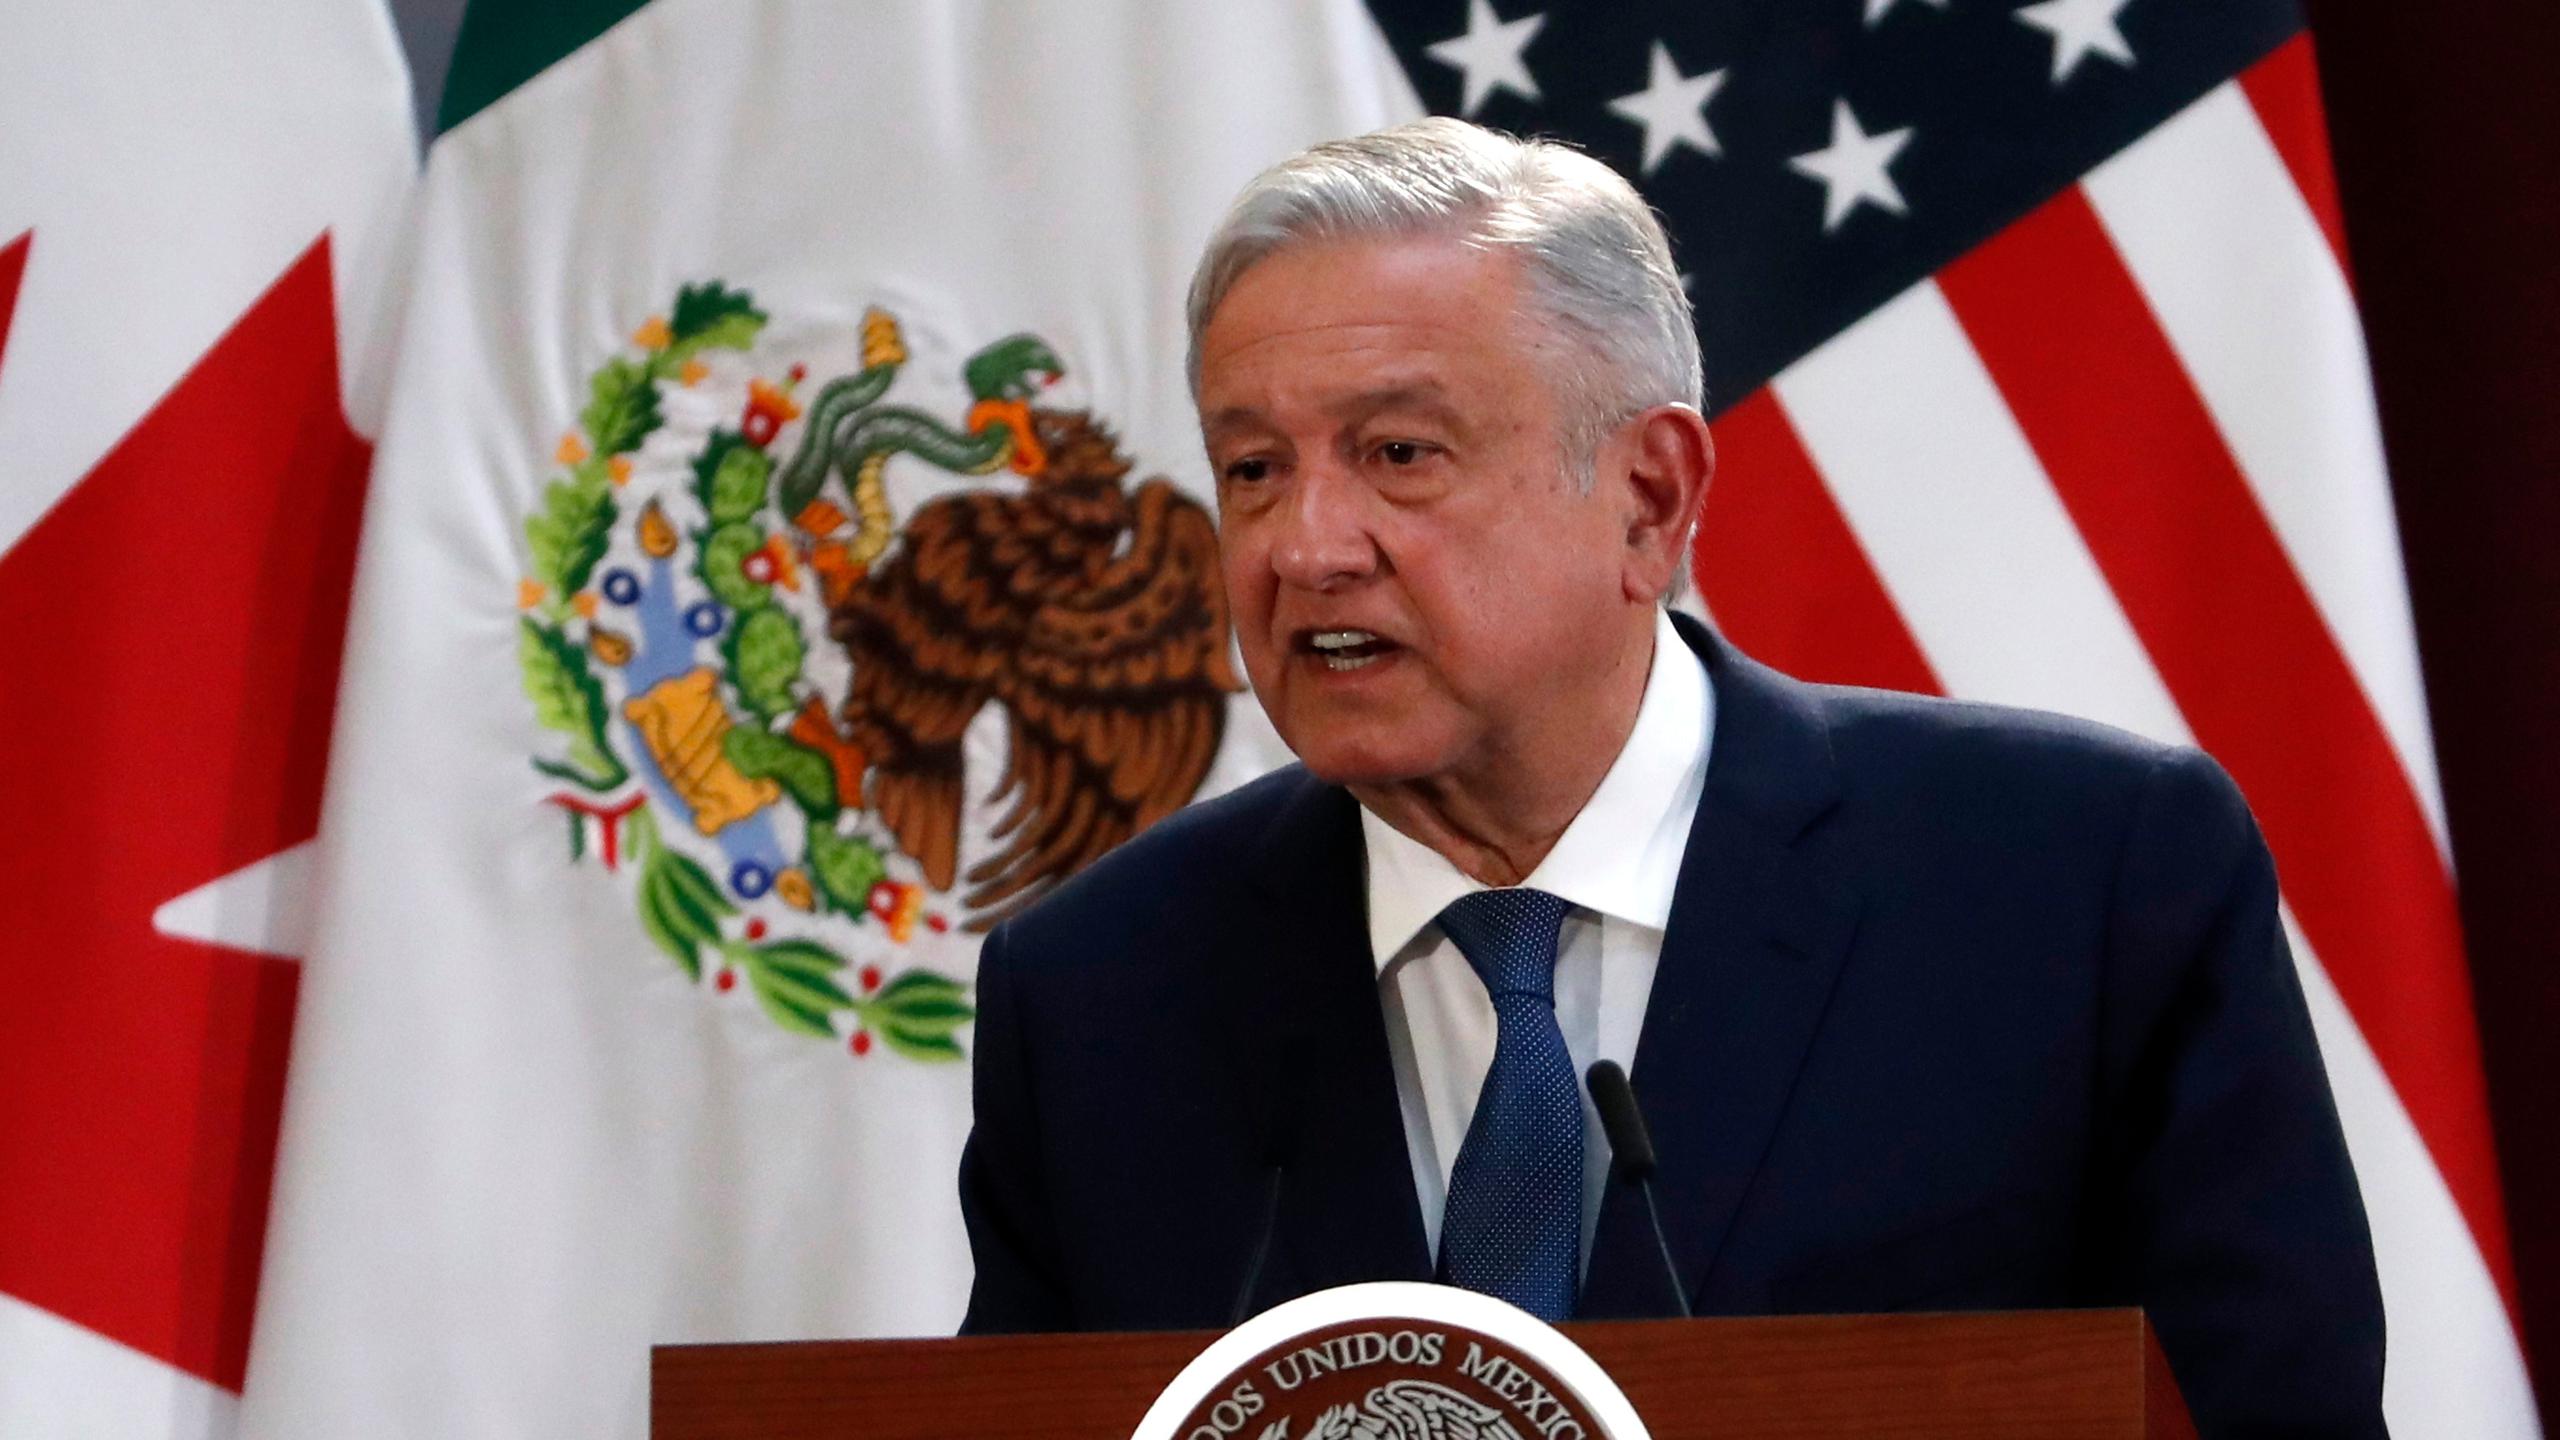 El enroque del presidente en su postura, que convirtió a México durante más de un mes en uno de los pocos países que no felicitaban a Biden, no se explicaría sin la buena sintonía personal que han demostrado López Obrador y Trump.